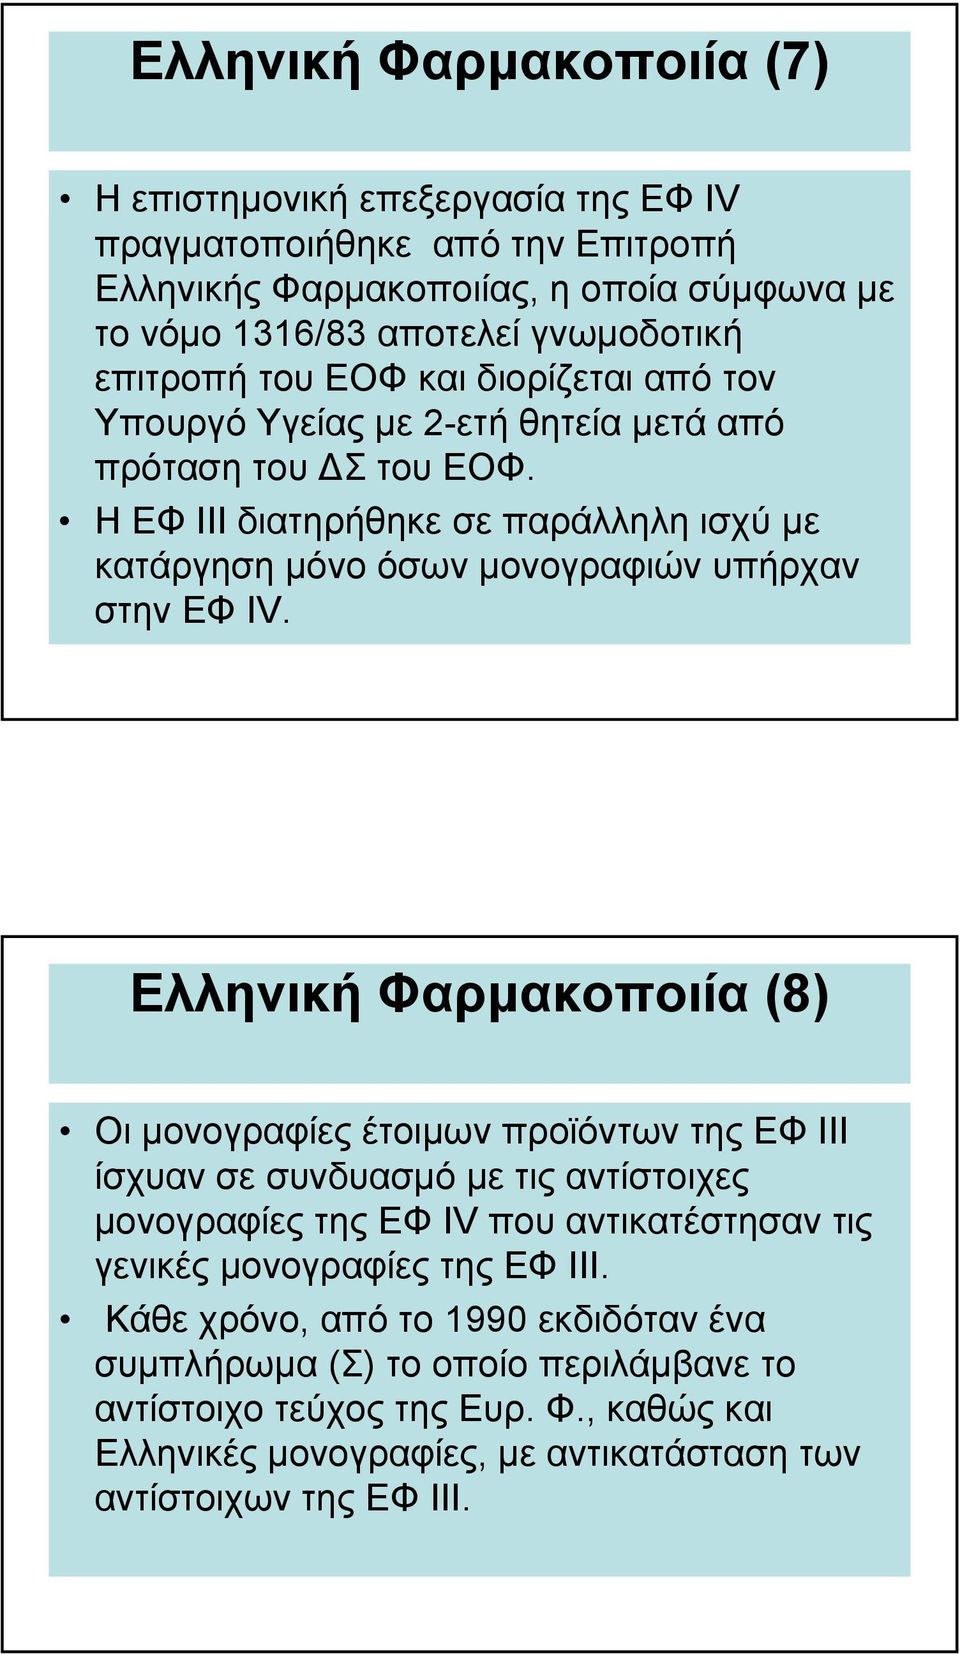 Ελληνική Φαρµακοποιία (8) Οι µονογραφίες έτοιµων προϊόντων της ΕΦ ΙΙΙ ίσχυαν σε συνδυασµό µε τιςαντίστοιχες µονογραφίες της ΕΦ IV που αντικατέστησαν τις γενικές µονογραφίες της ΕΦ ΙΙΙ.